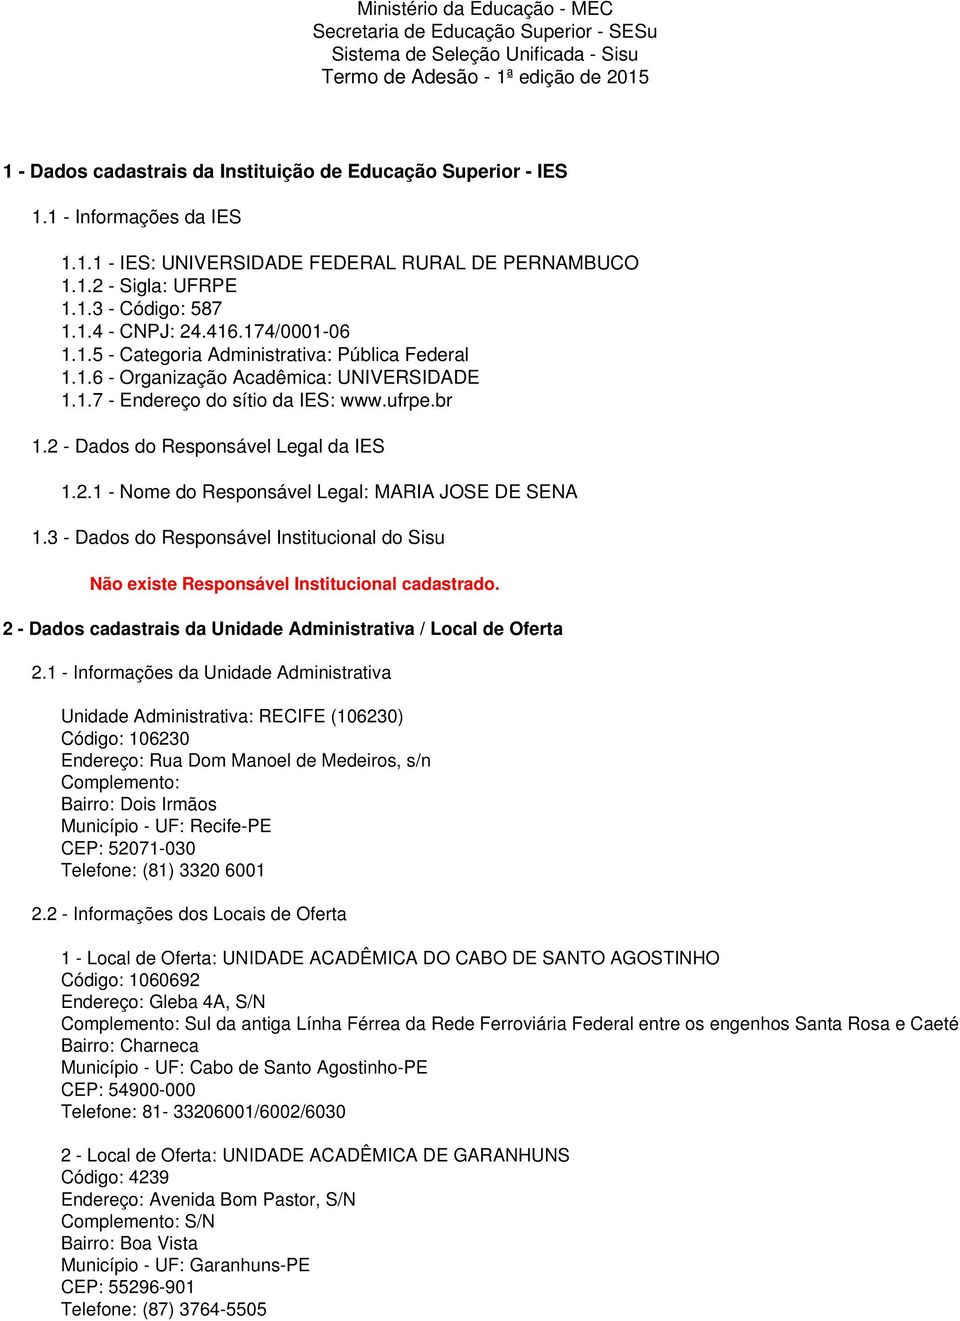 1.6 - Organização Acadêmica: UNIVERSIDADE 1.1.7 - Endereço do sítio da IES: www.ufrpe.br 1.2 - Dados do Responsável Legal da IES 1.2.1 - Nome do Responsável Legal: MARIA JOSE DE SENA 1.